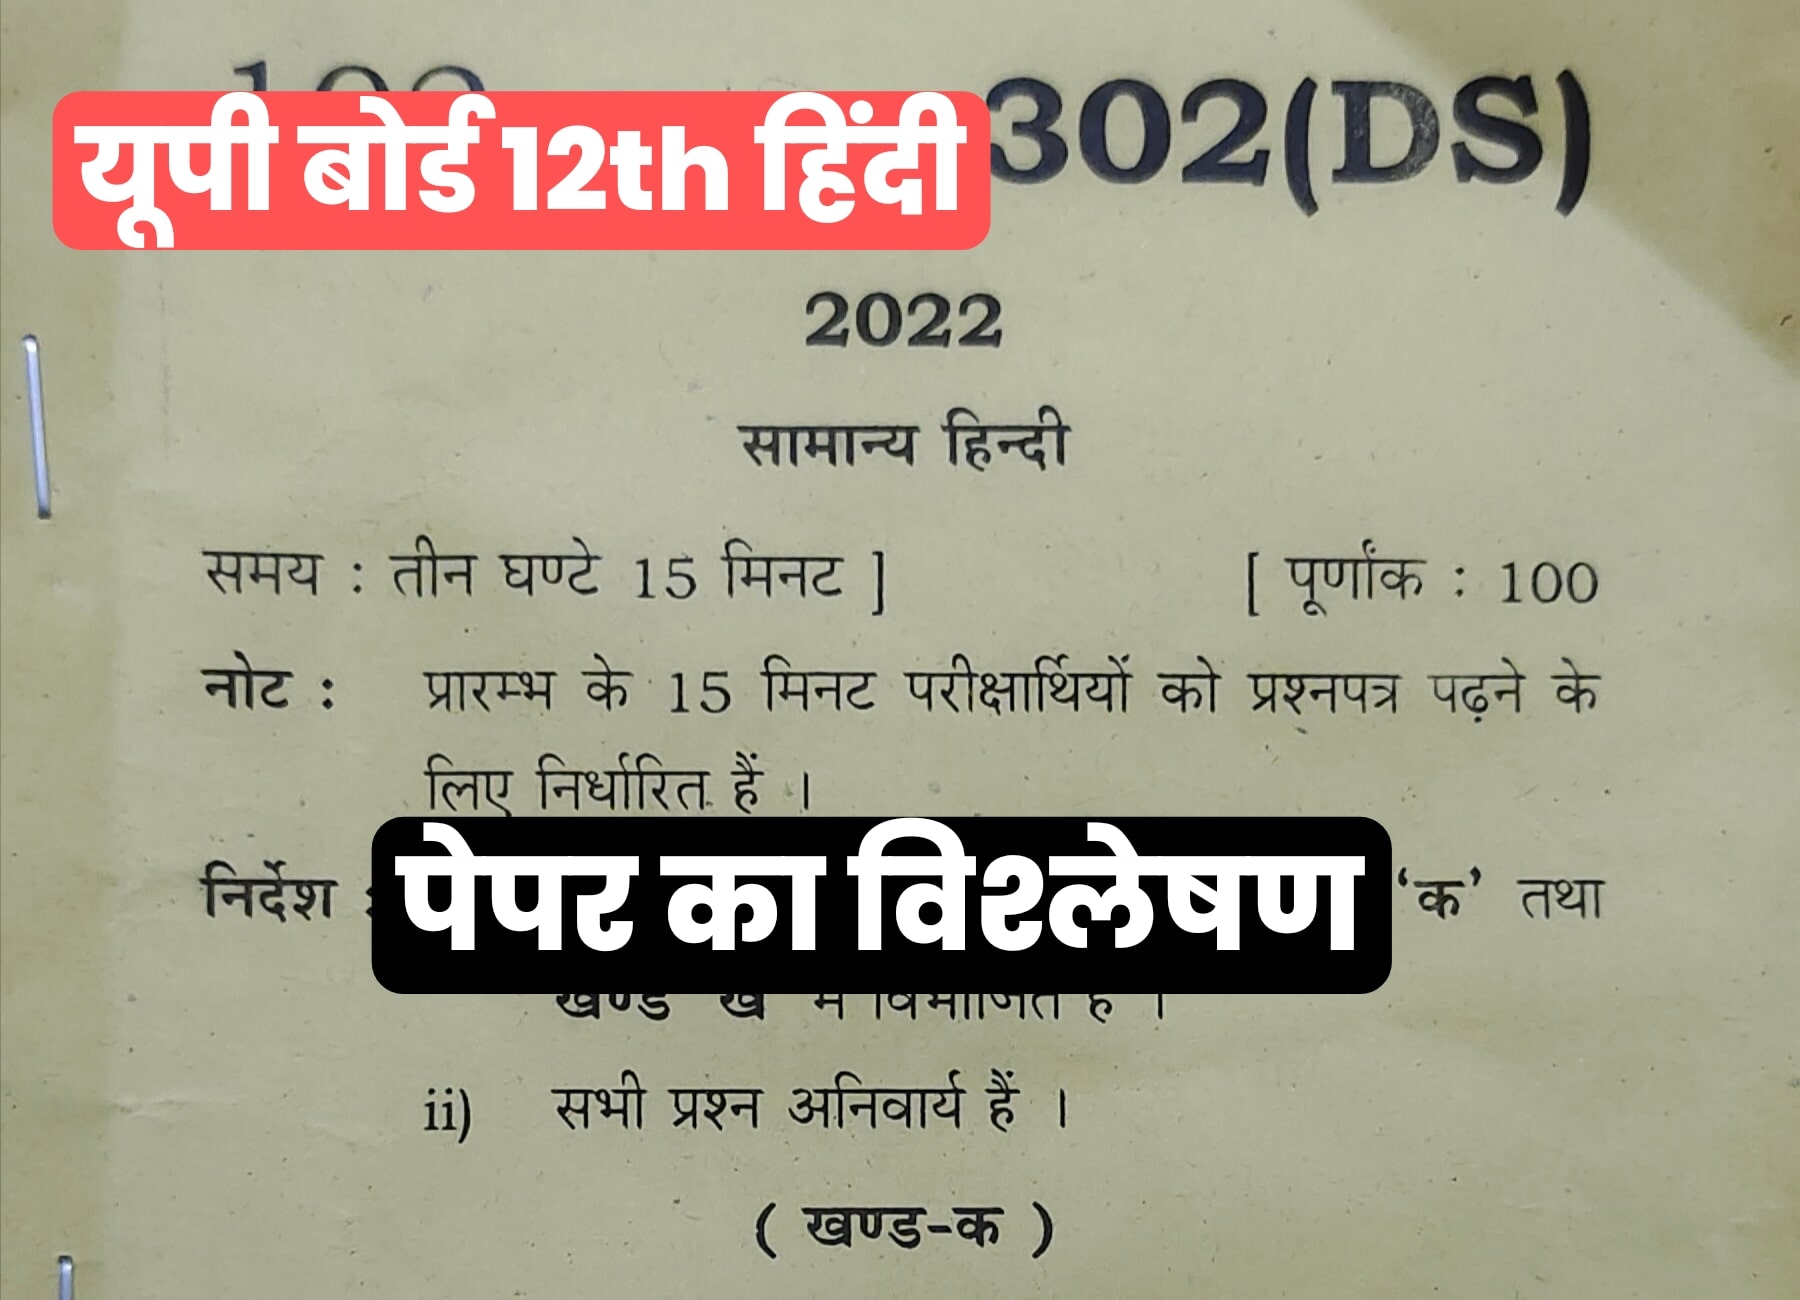 UP Board Class 12th Hindi Paper : जानें कैसा रहा इस बार का प्रश्न पत्र, देखें इस बार का पेपर